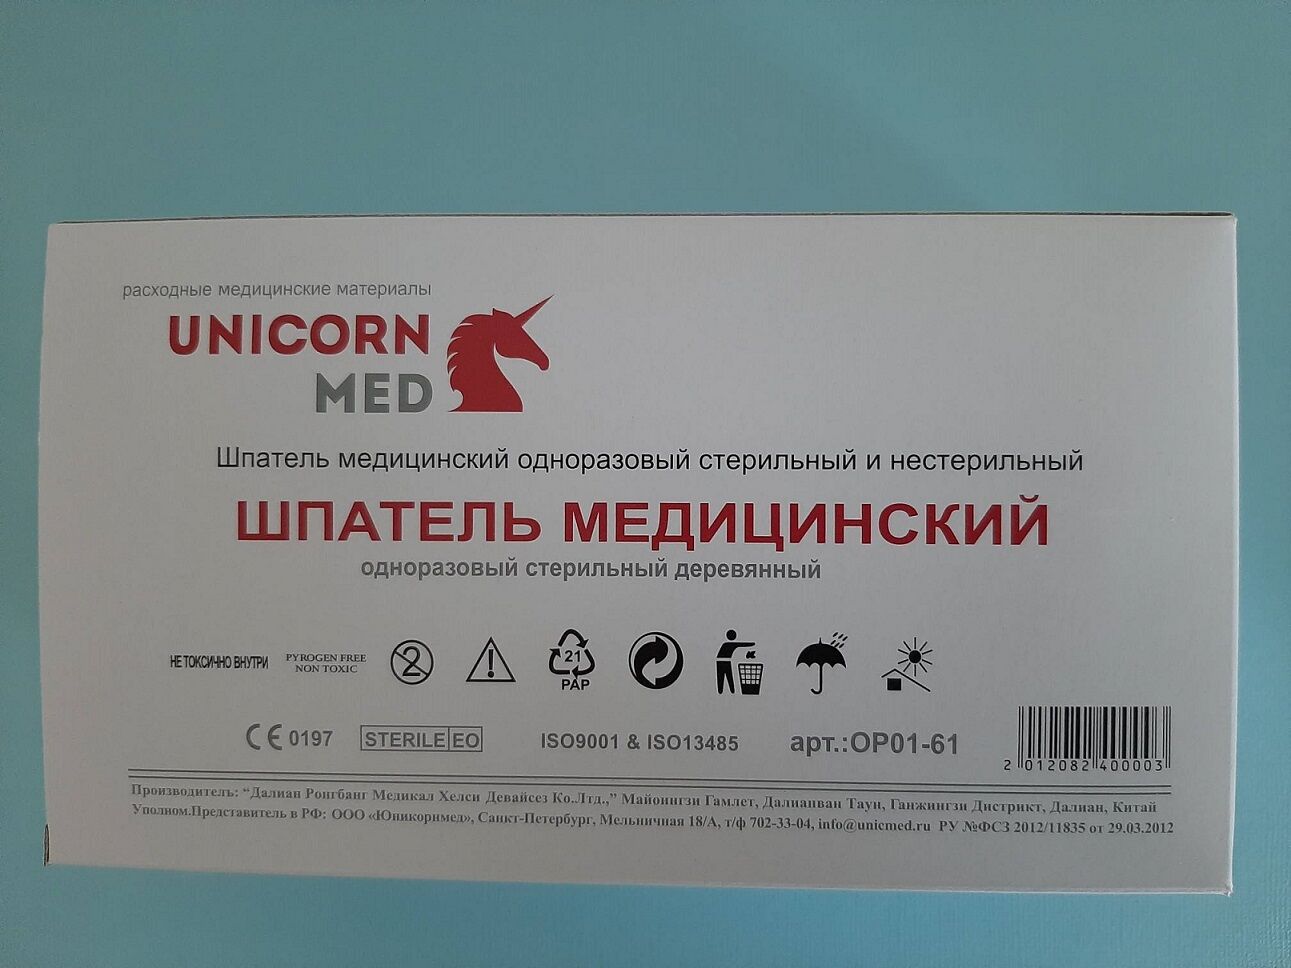 Шпатель медицинский одноразовый стерильный деревянный UnicornMed 100 штук в упаковке